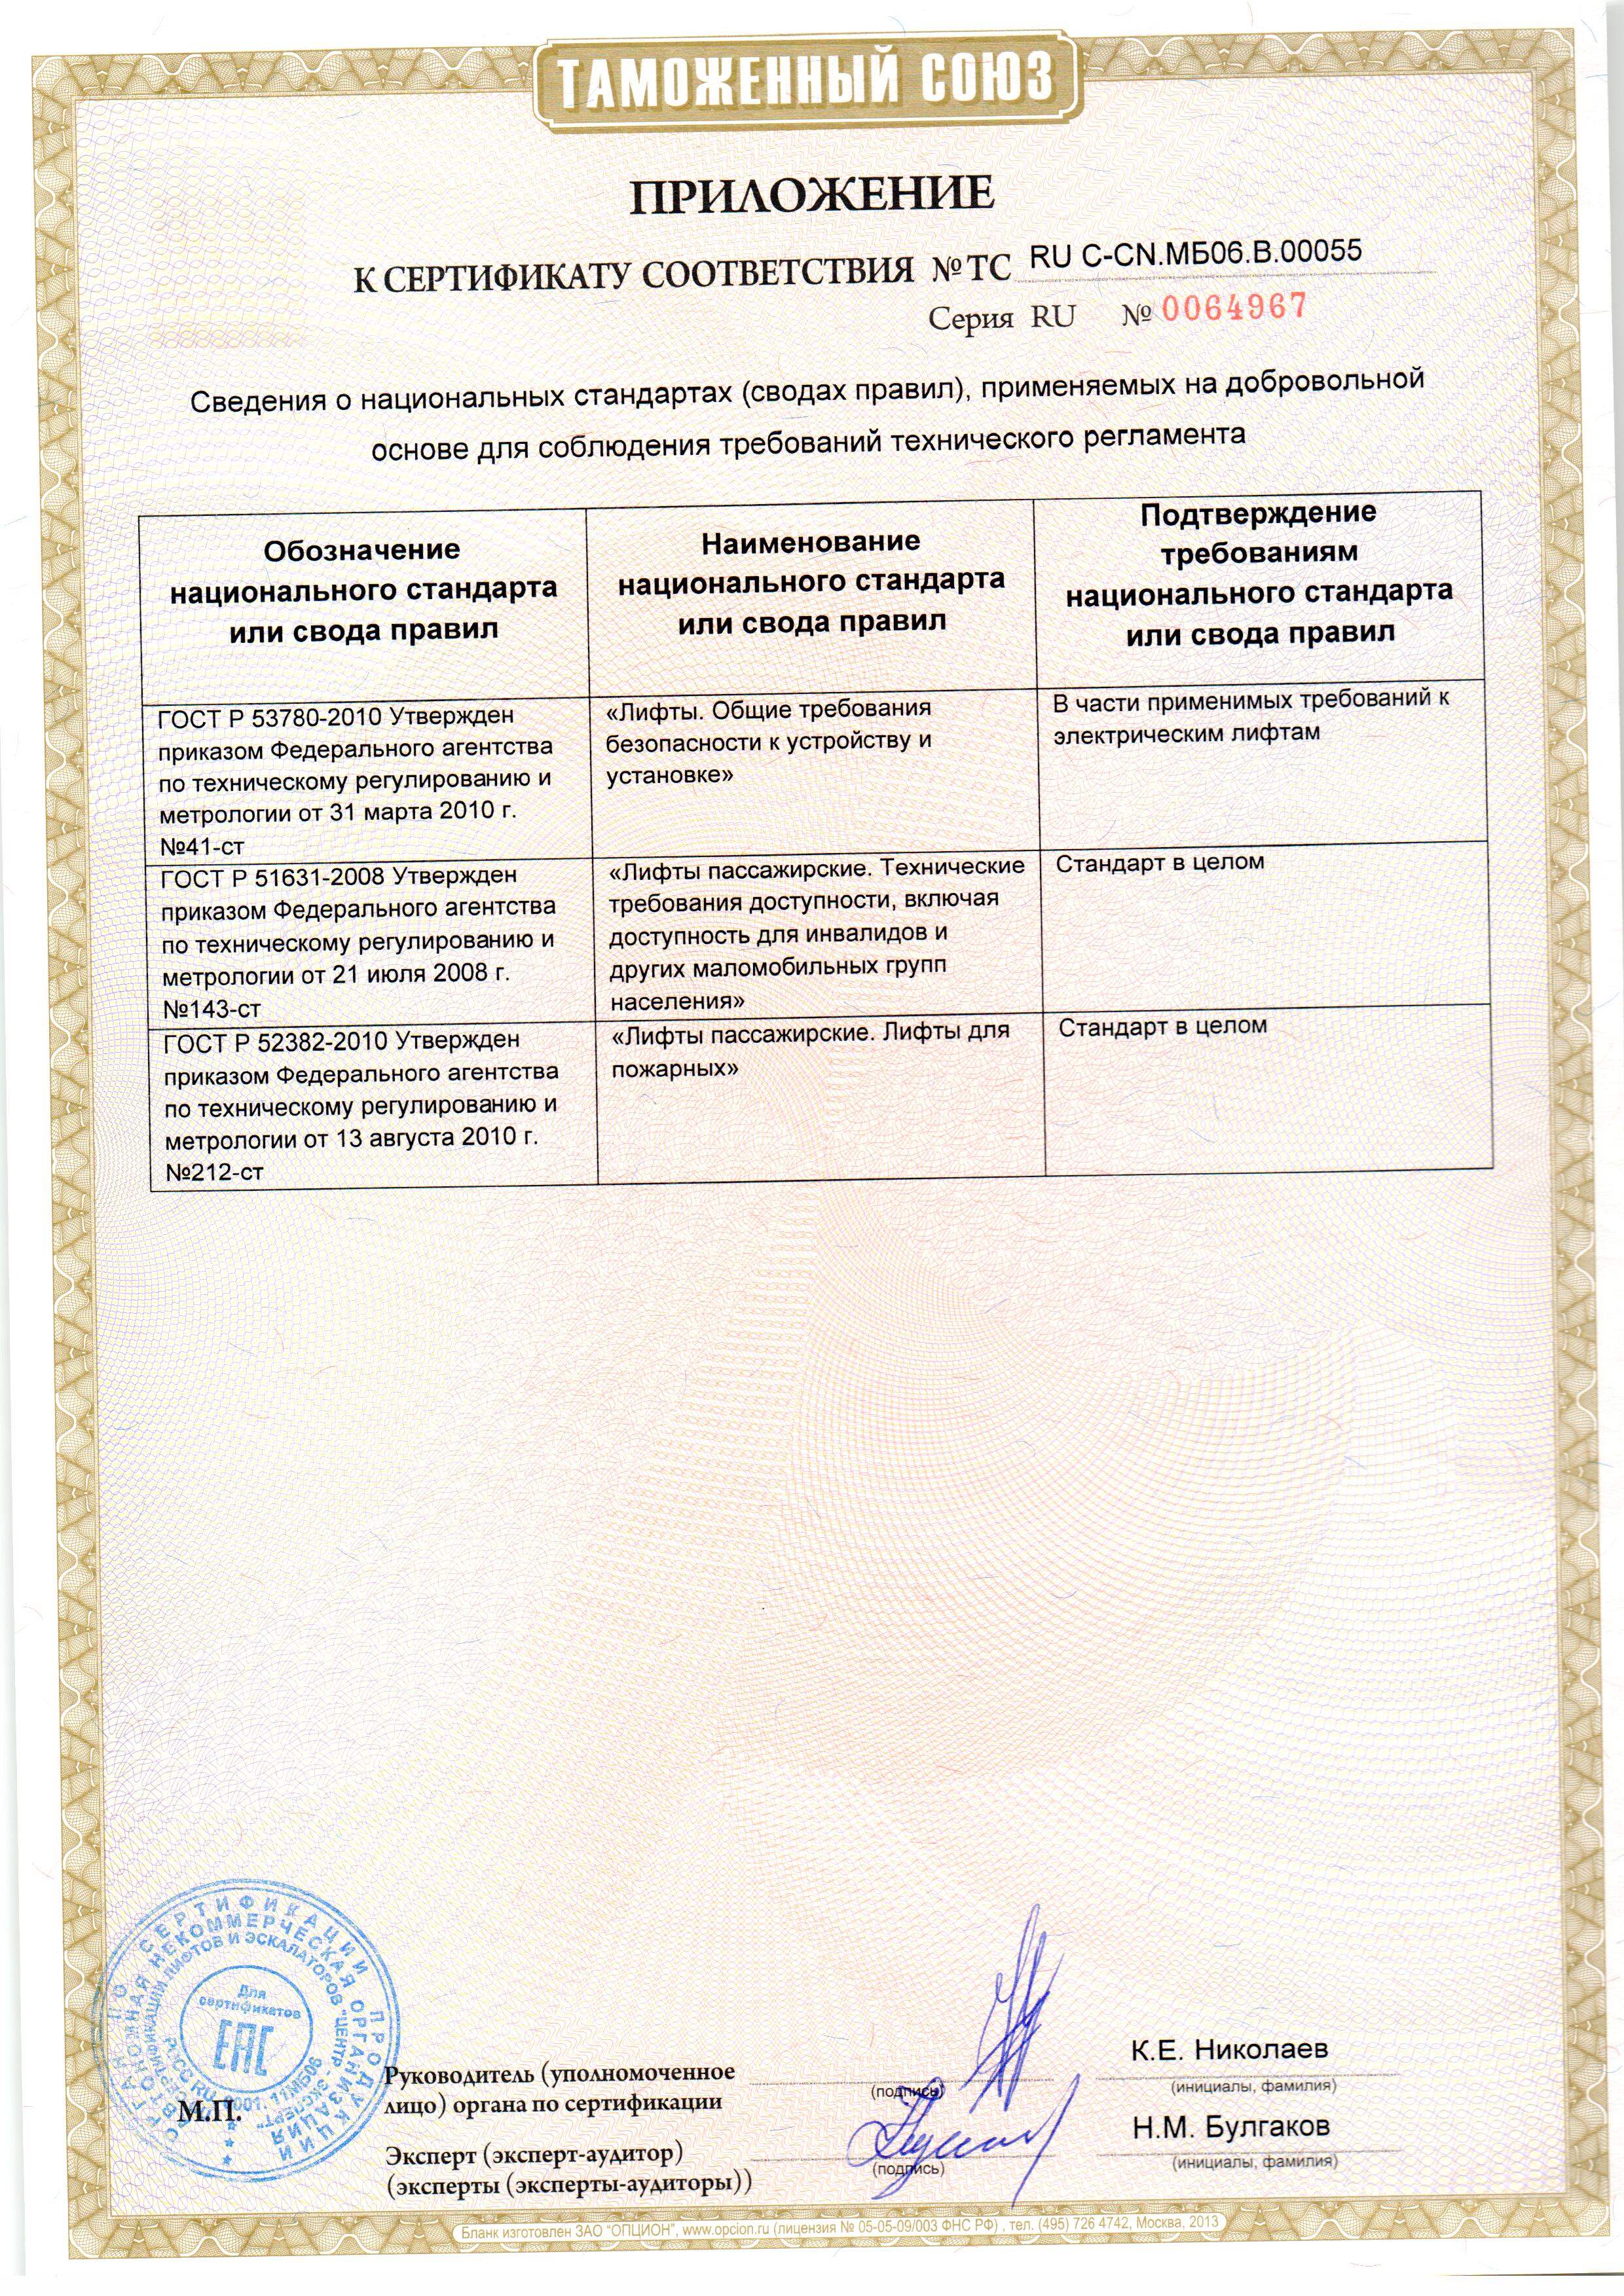 Приложение к сертификату № RU С-CN.МБ06.В00055